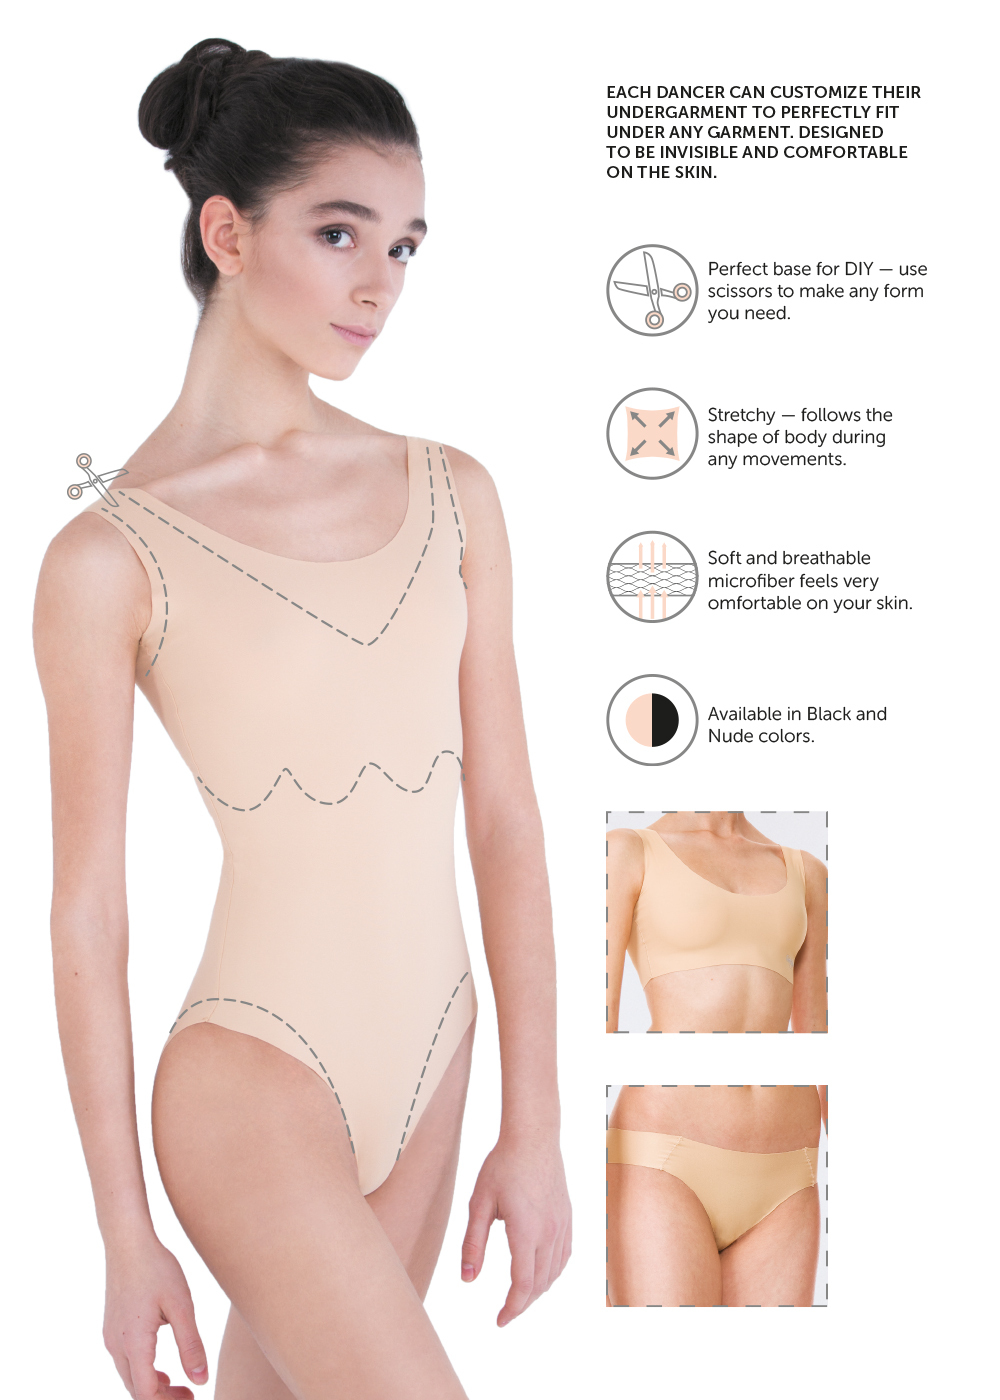 DA-307PR Low rise seamless shorts (underwear) (DA-307PR)  Grishko® Buy  online the best ballet products. Order now!